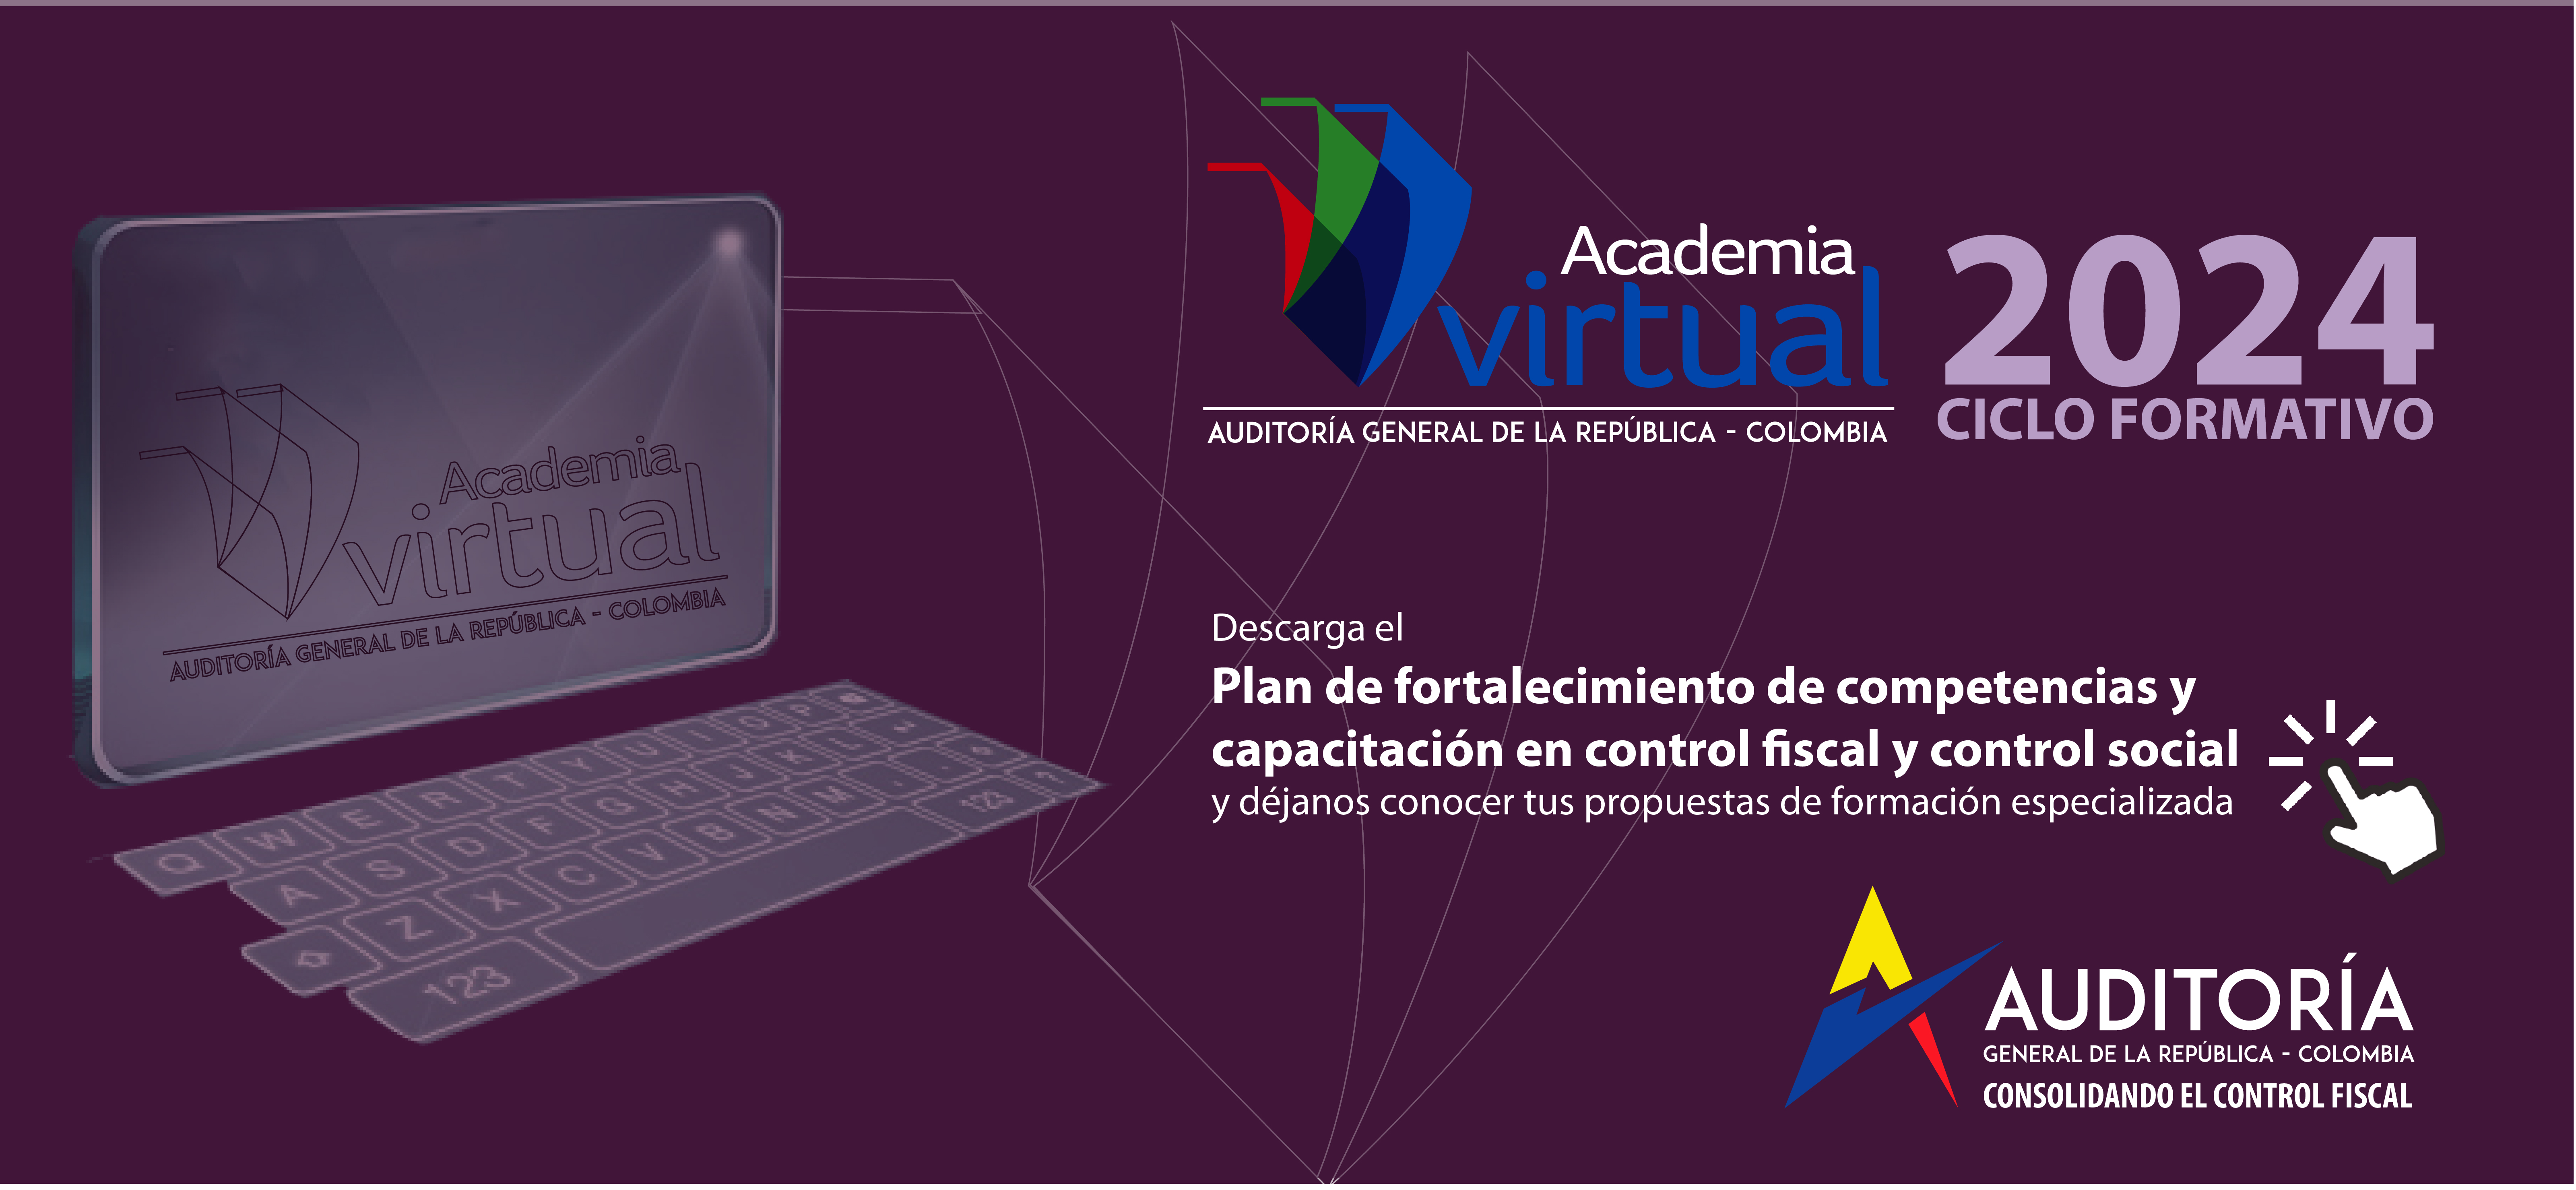 Publicidad ciclo formativo 2024 de la Academia Virtual AGR, invitando a conocer plan de competenias y capacitación en control fiscal y control social y a hacer comentarios.